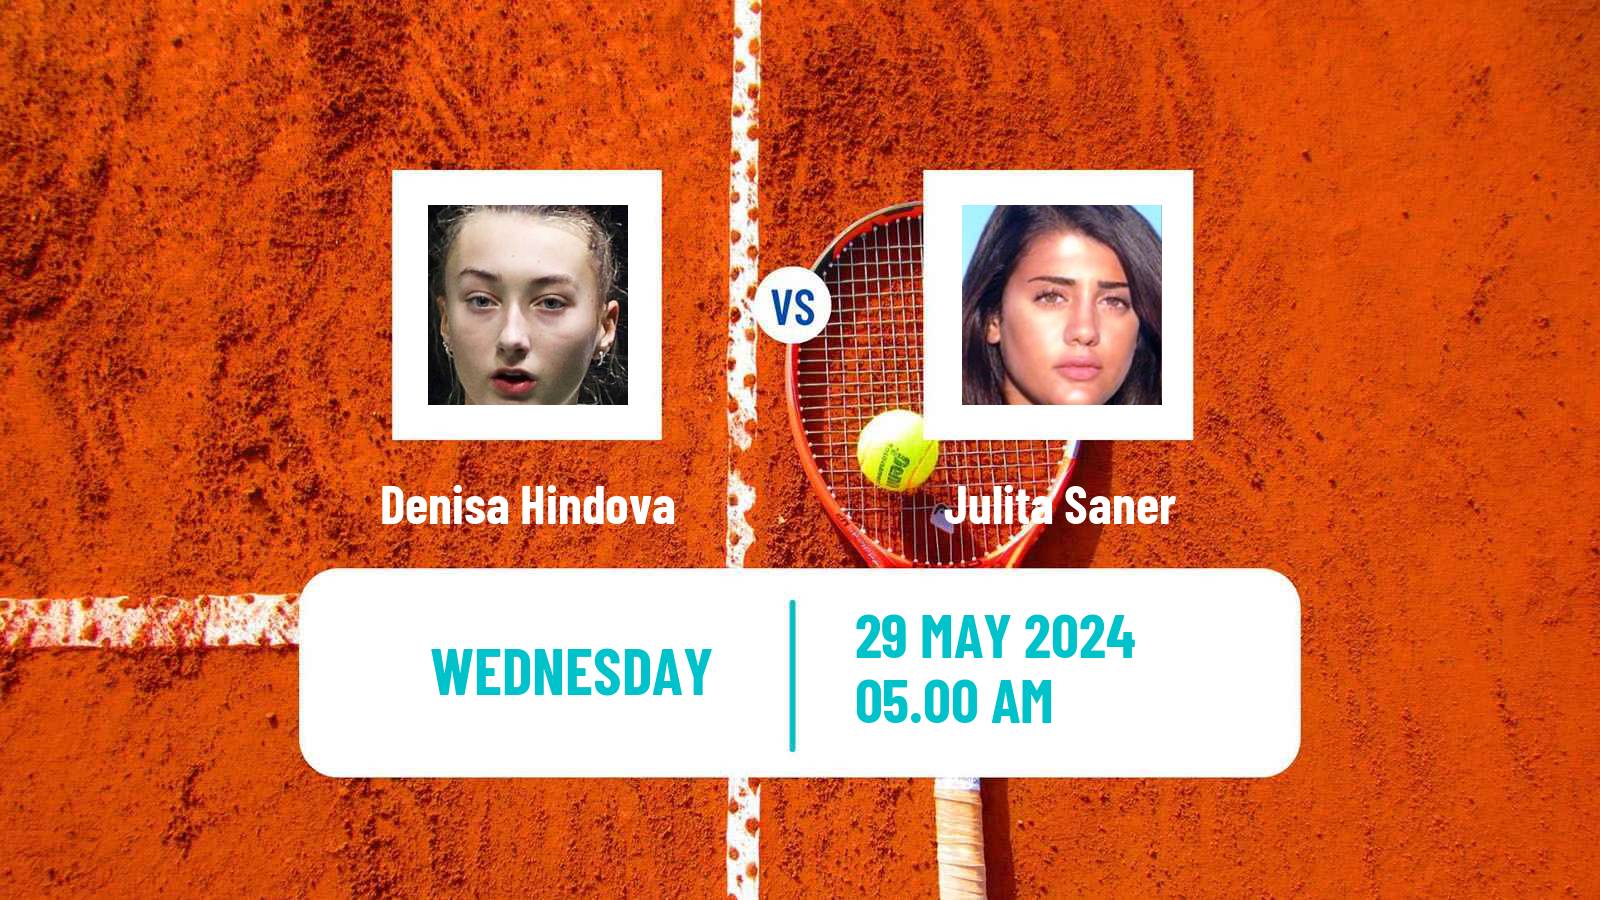 Tennis ITF W15 Bol 2 Women Denisa Hindova - Julita Saner